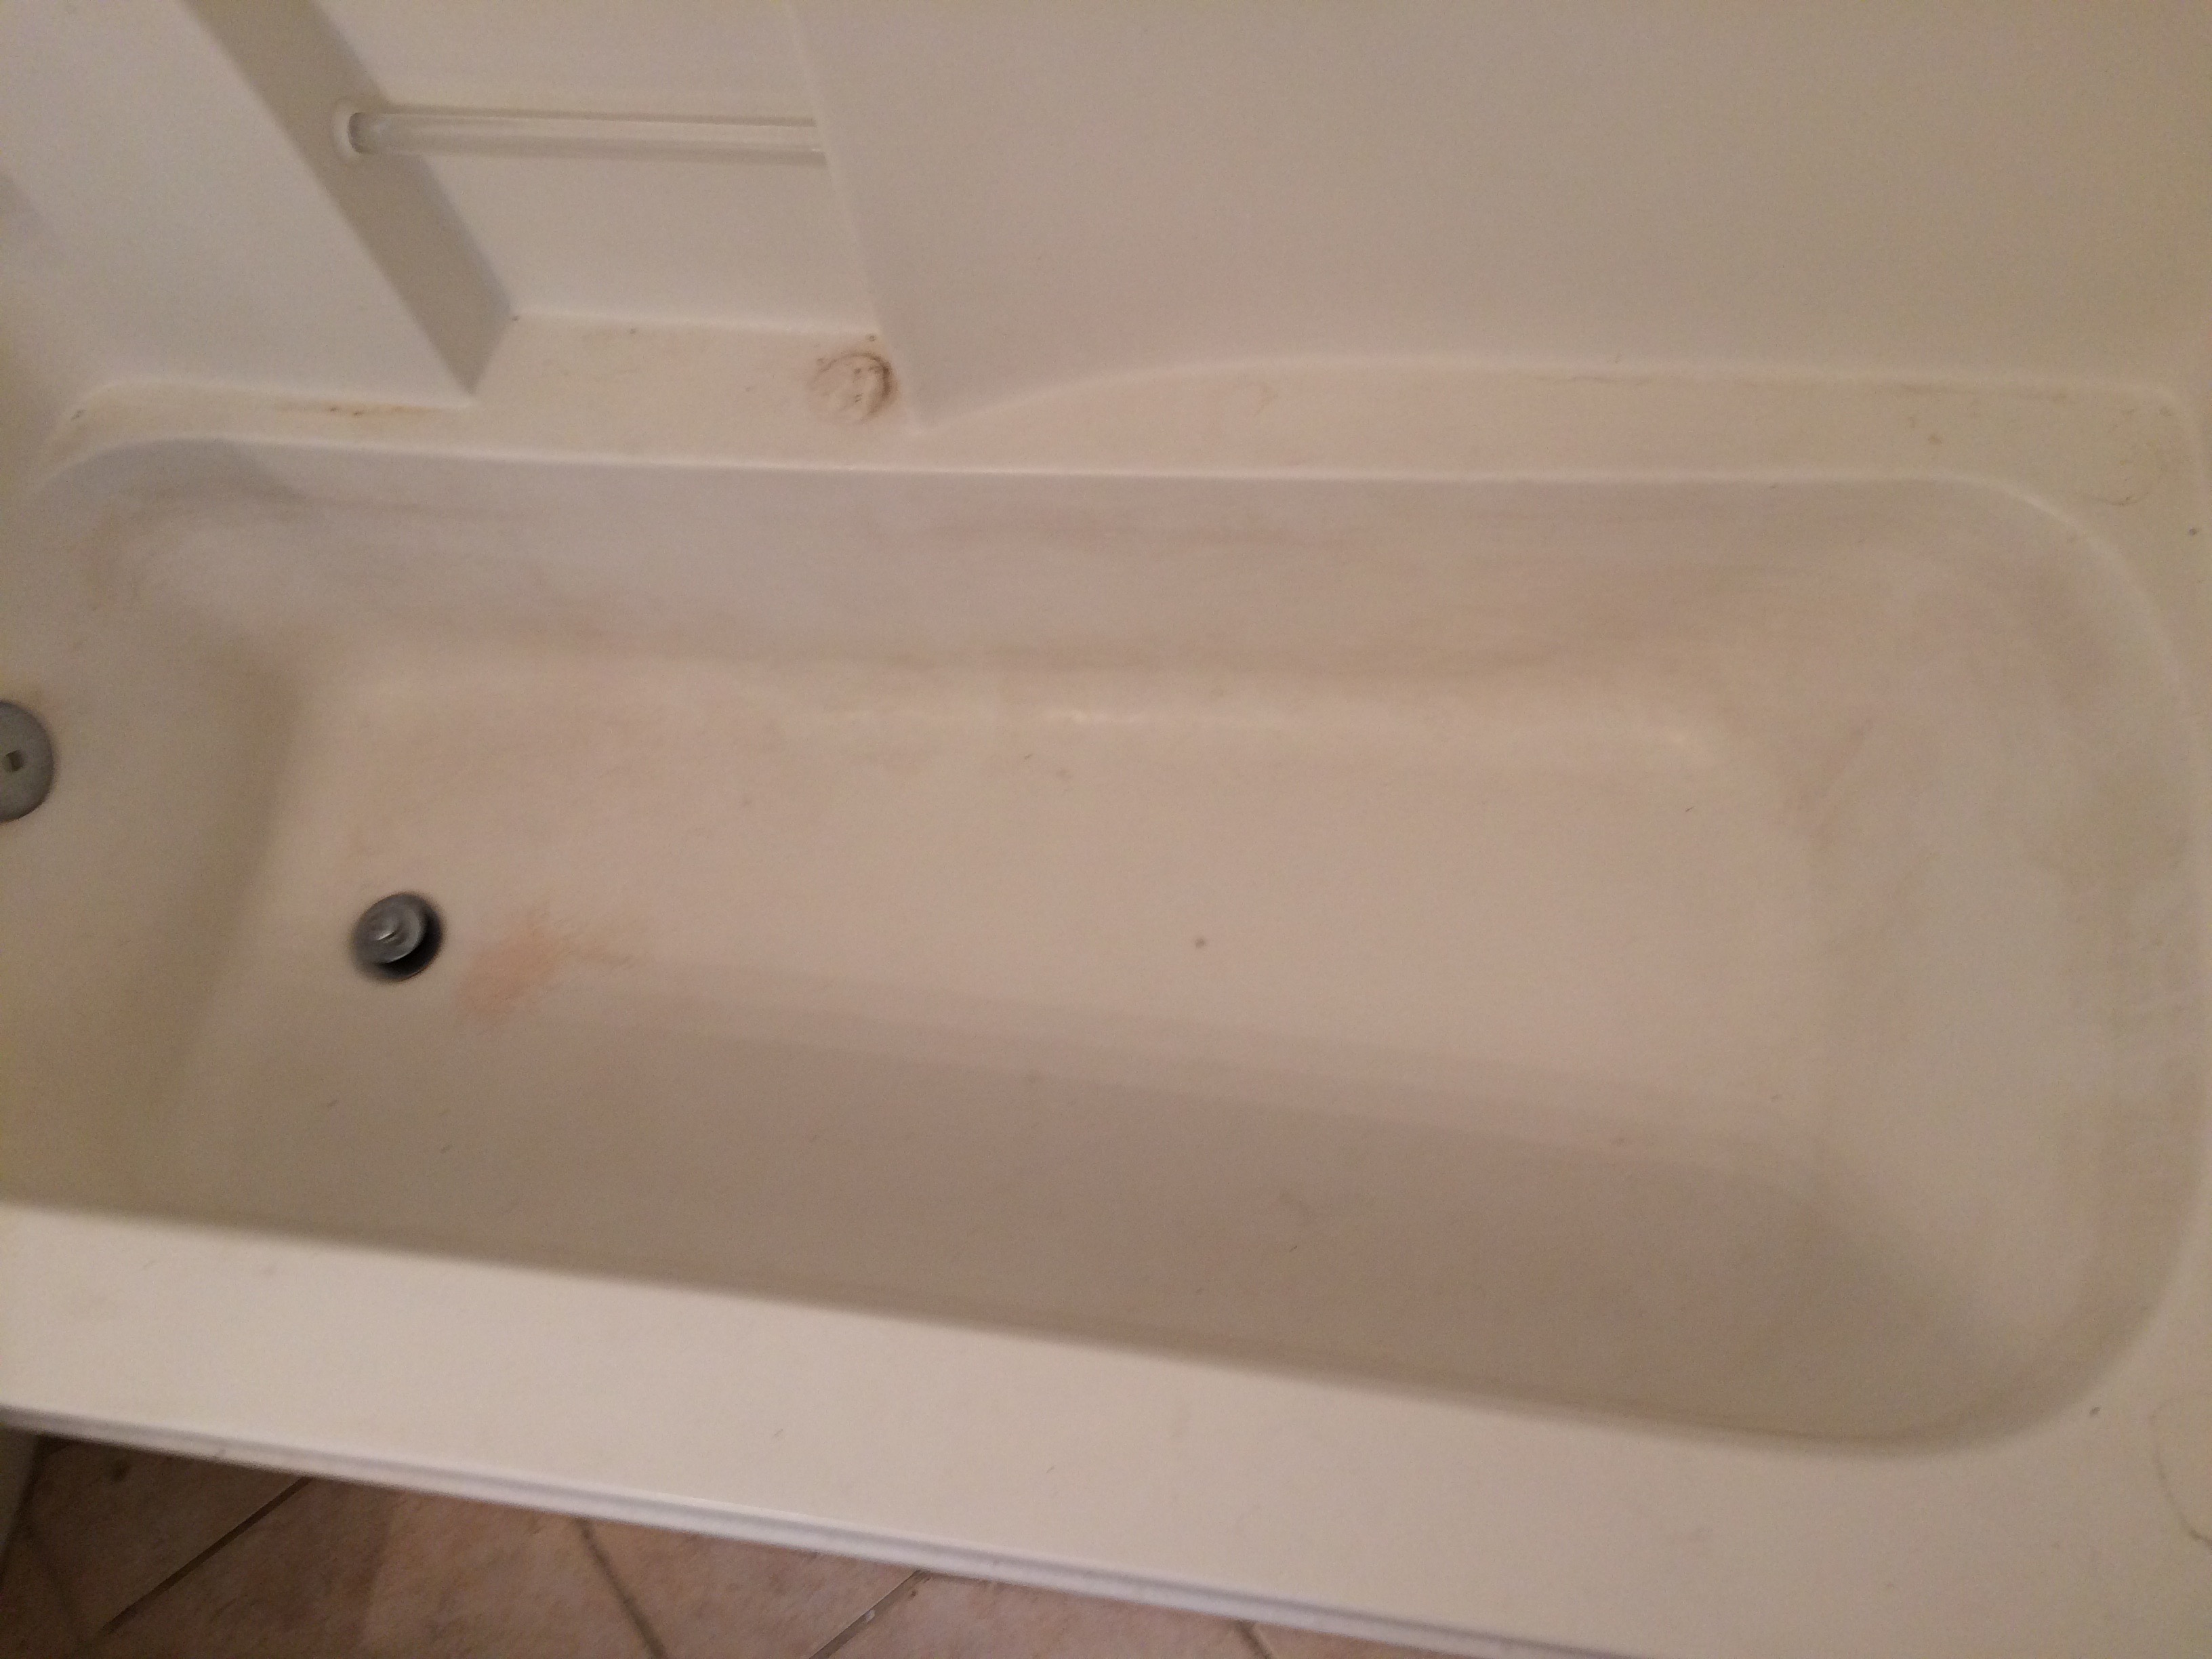 Dirty tub